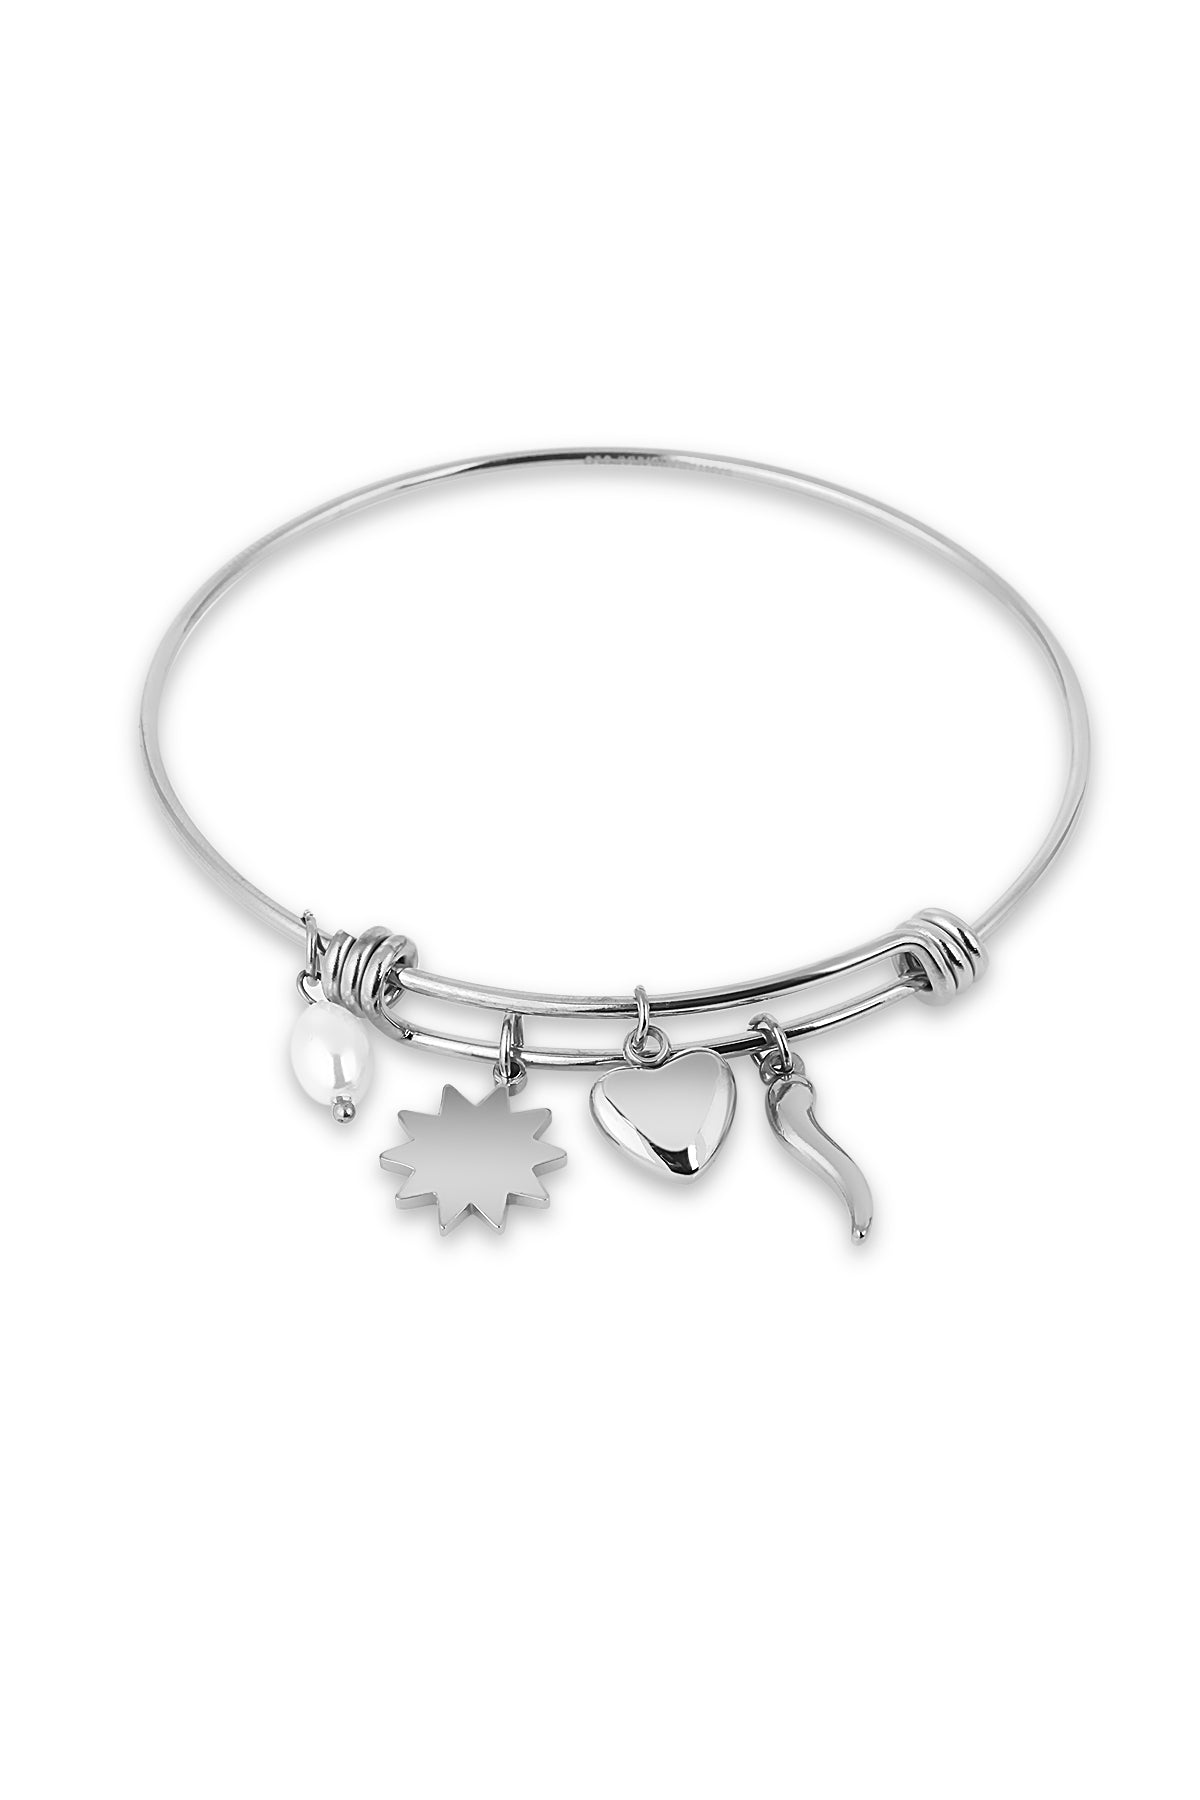 santa-barbara-polo-bracelet-sbj-3-1135-1